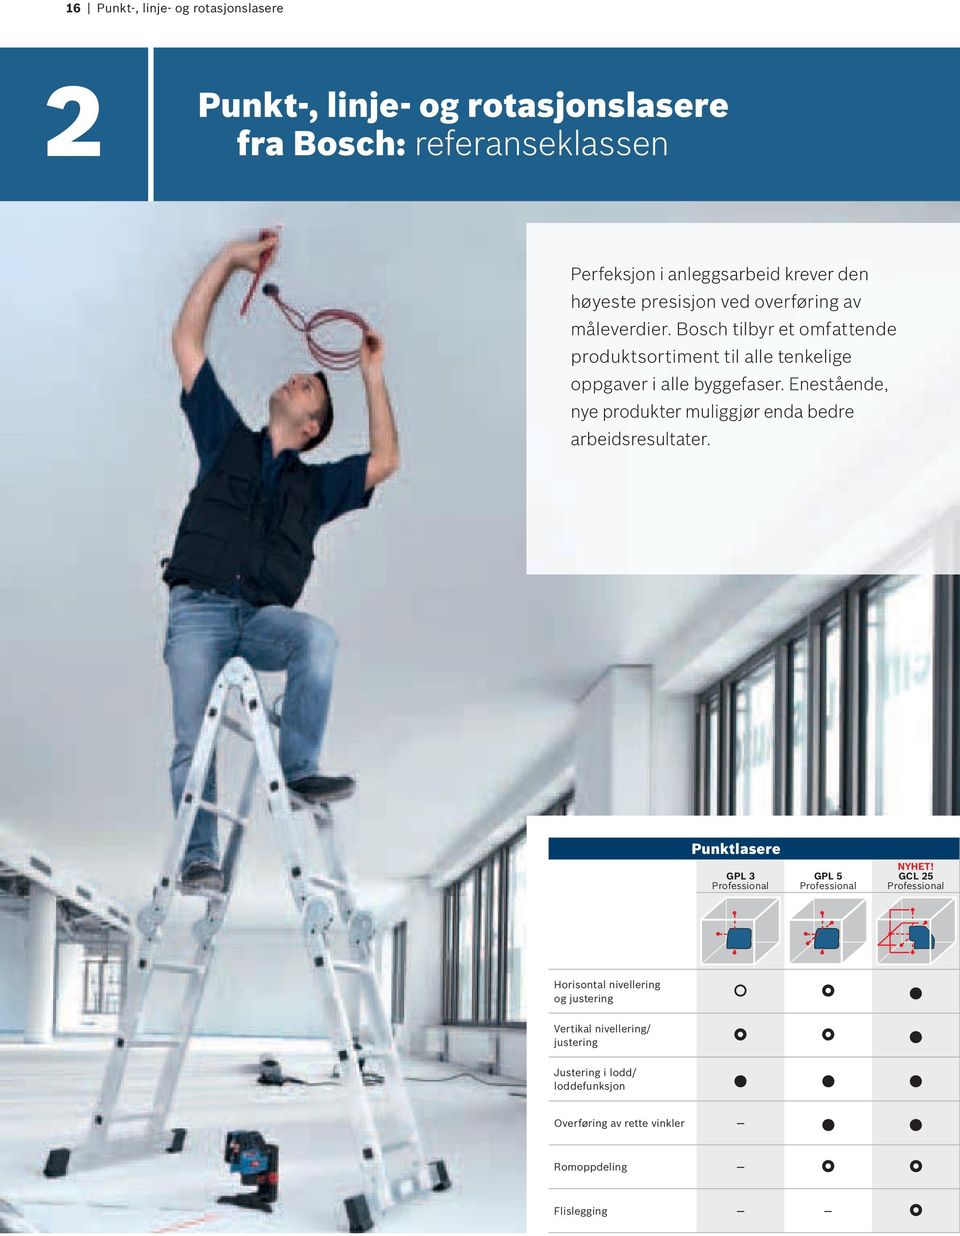 Bosch tilbyr et omfattende produktsortiment til alle tenkelige oppgaver i alle byggefaser.